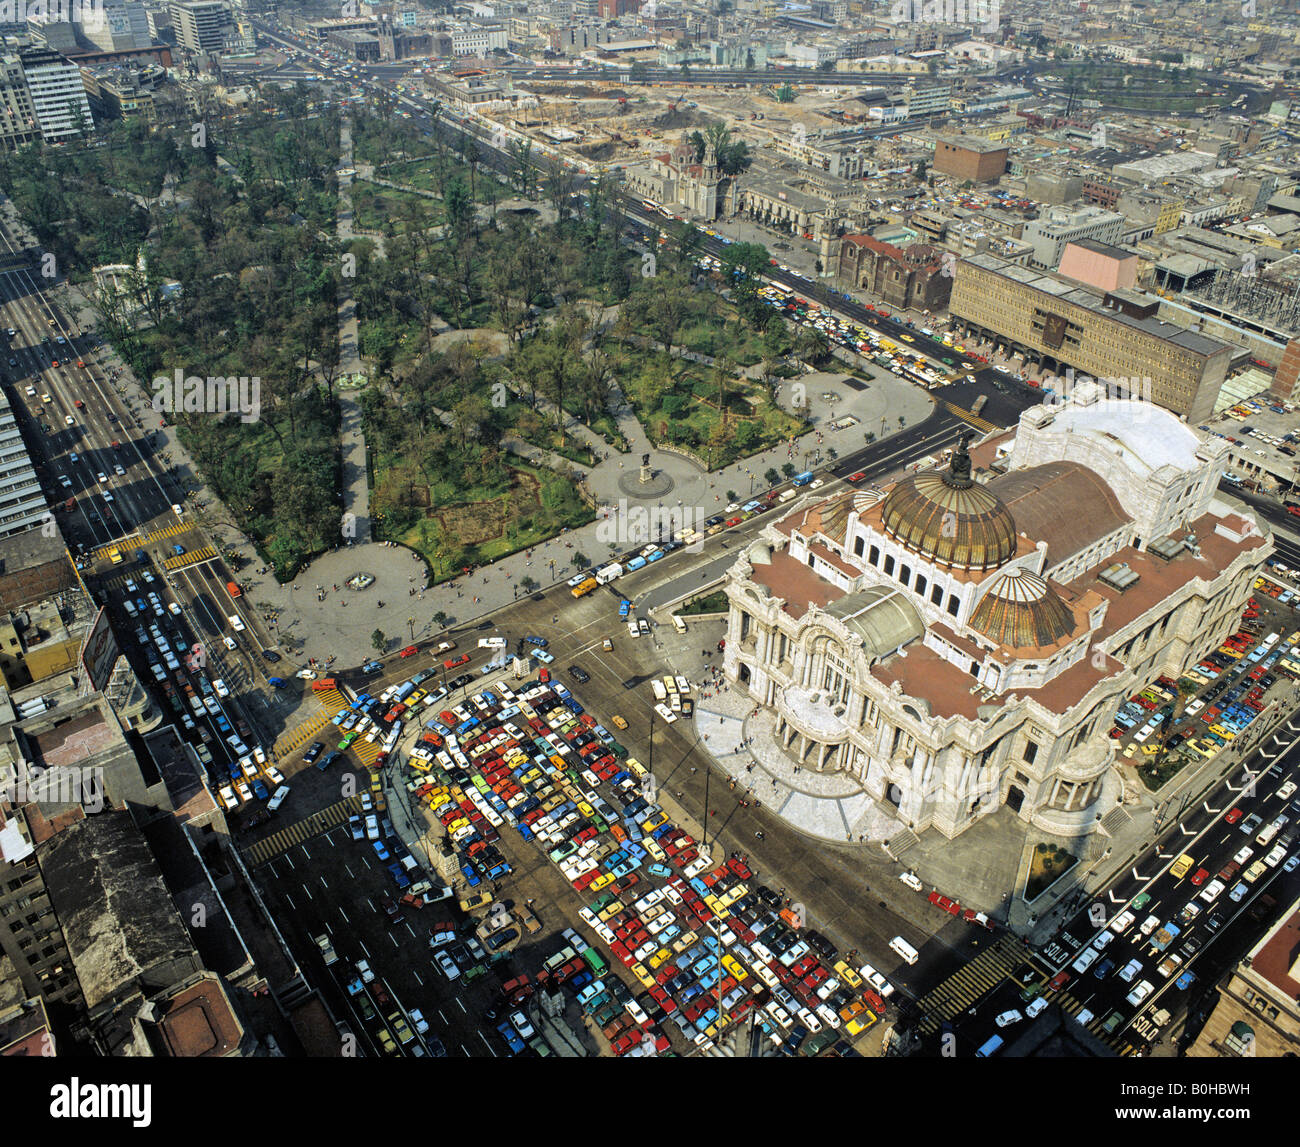 Aerial picture of the Palacio de las Bellas Artes, palace of fine arts in Mexico City, Mexico, Central America Stock Photo